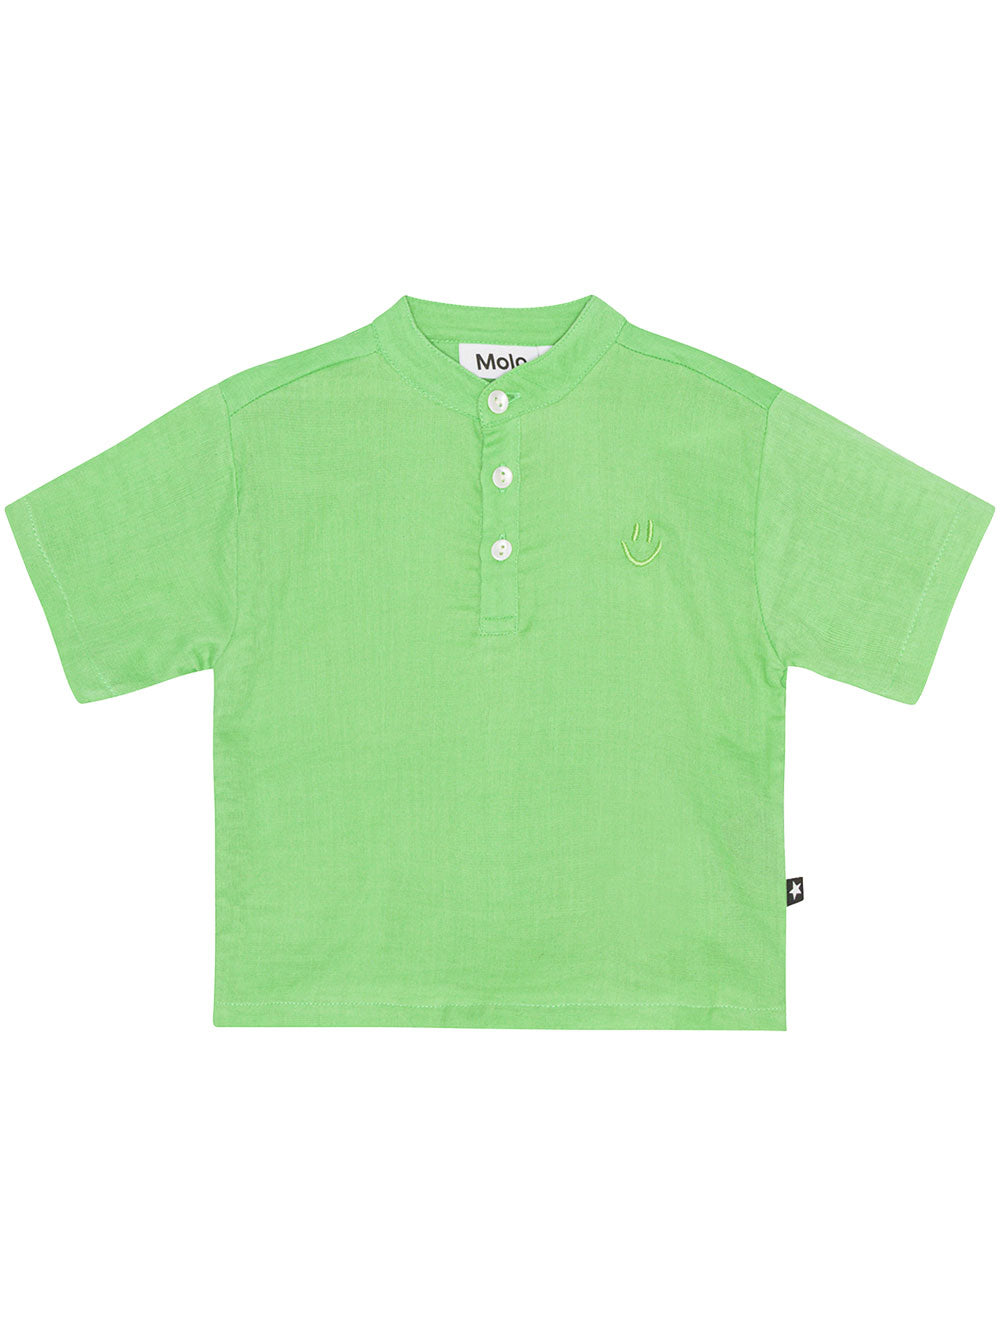 Ever Grass Green T-Shirt